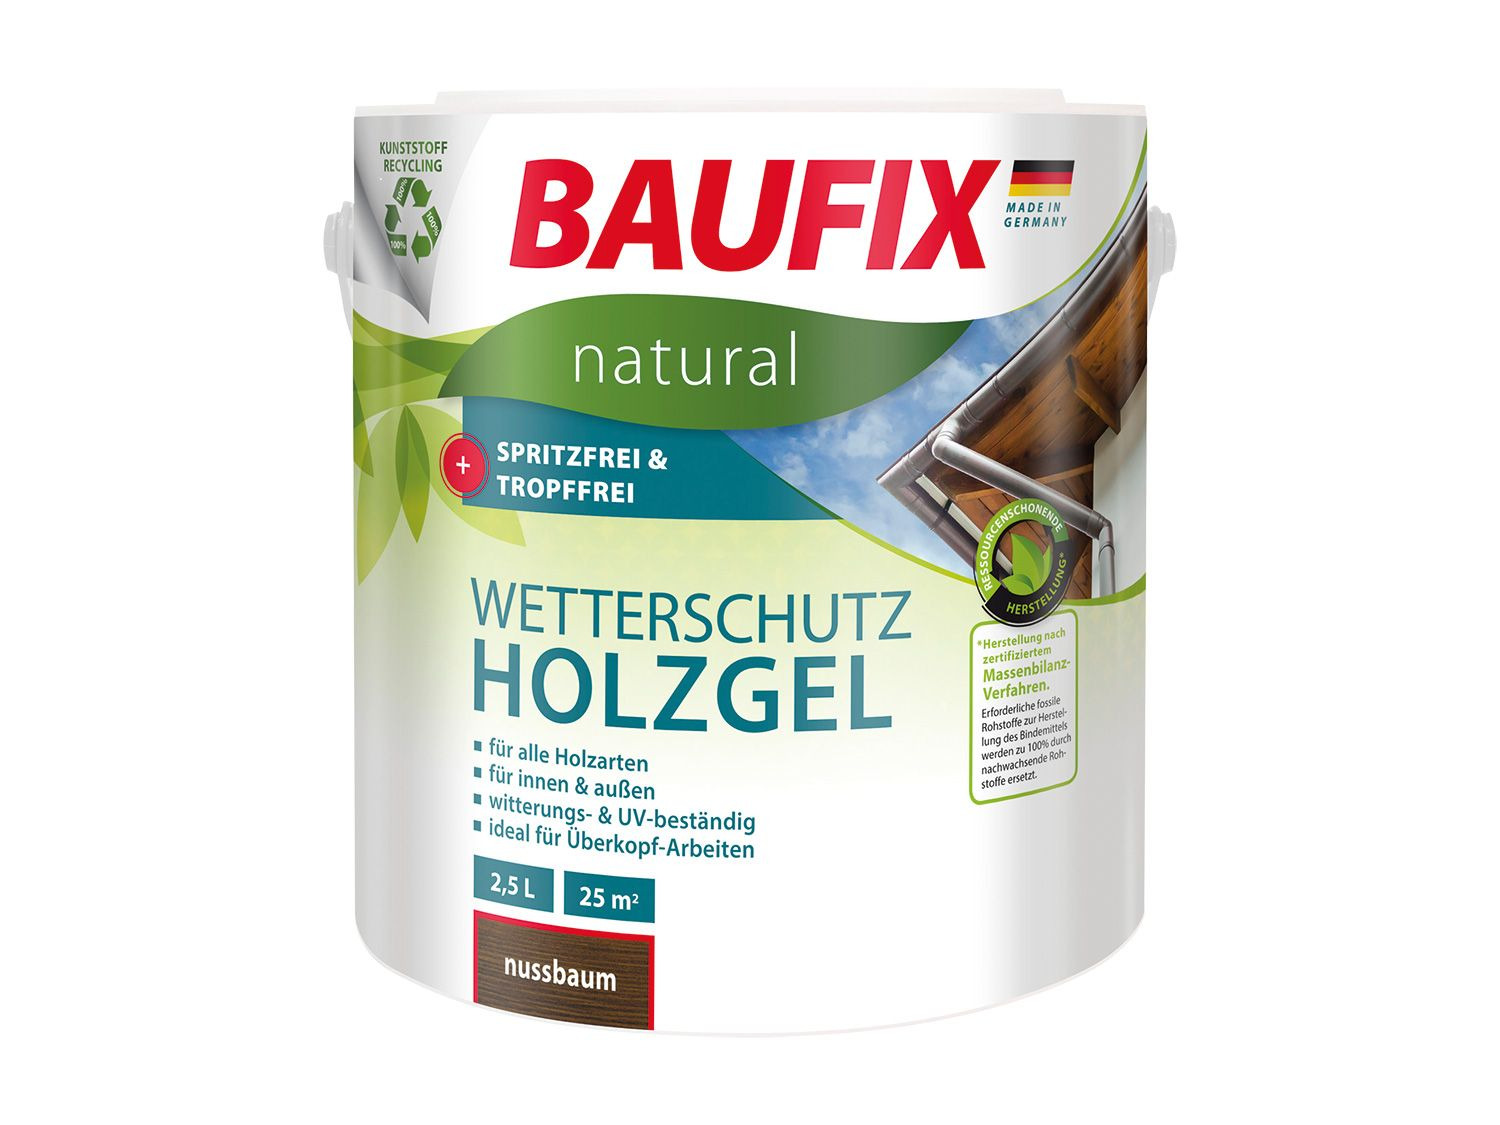 BAUFIX natural Wetterschutz-Holzgel 2 5 Liter